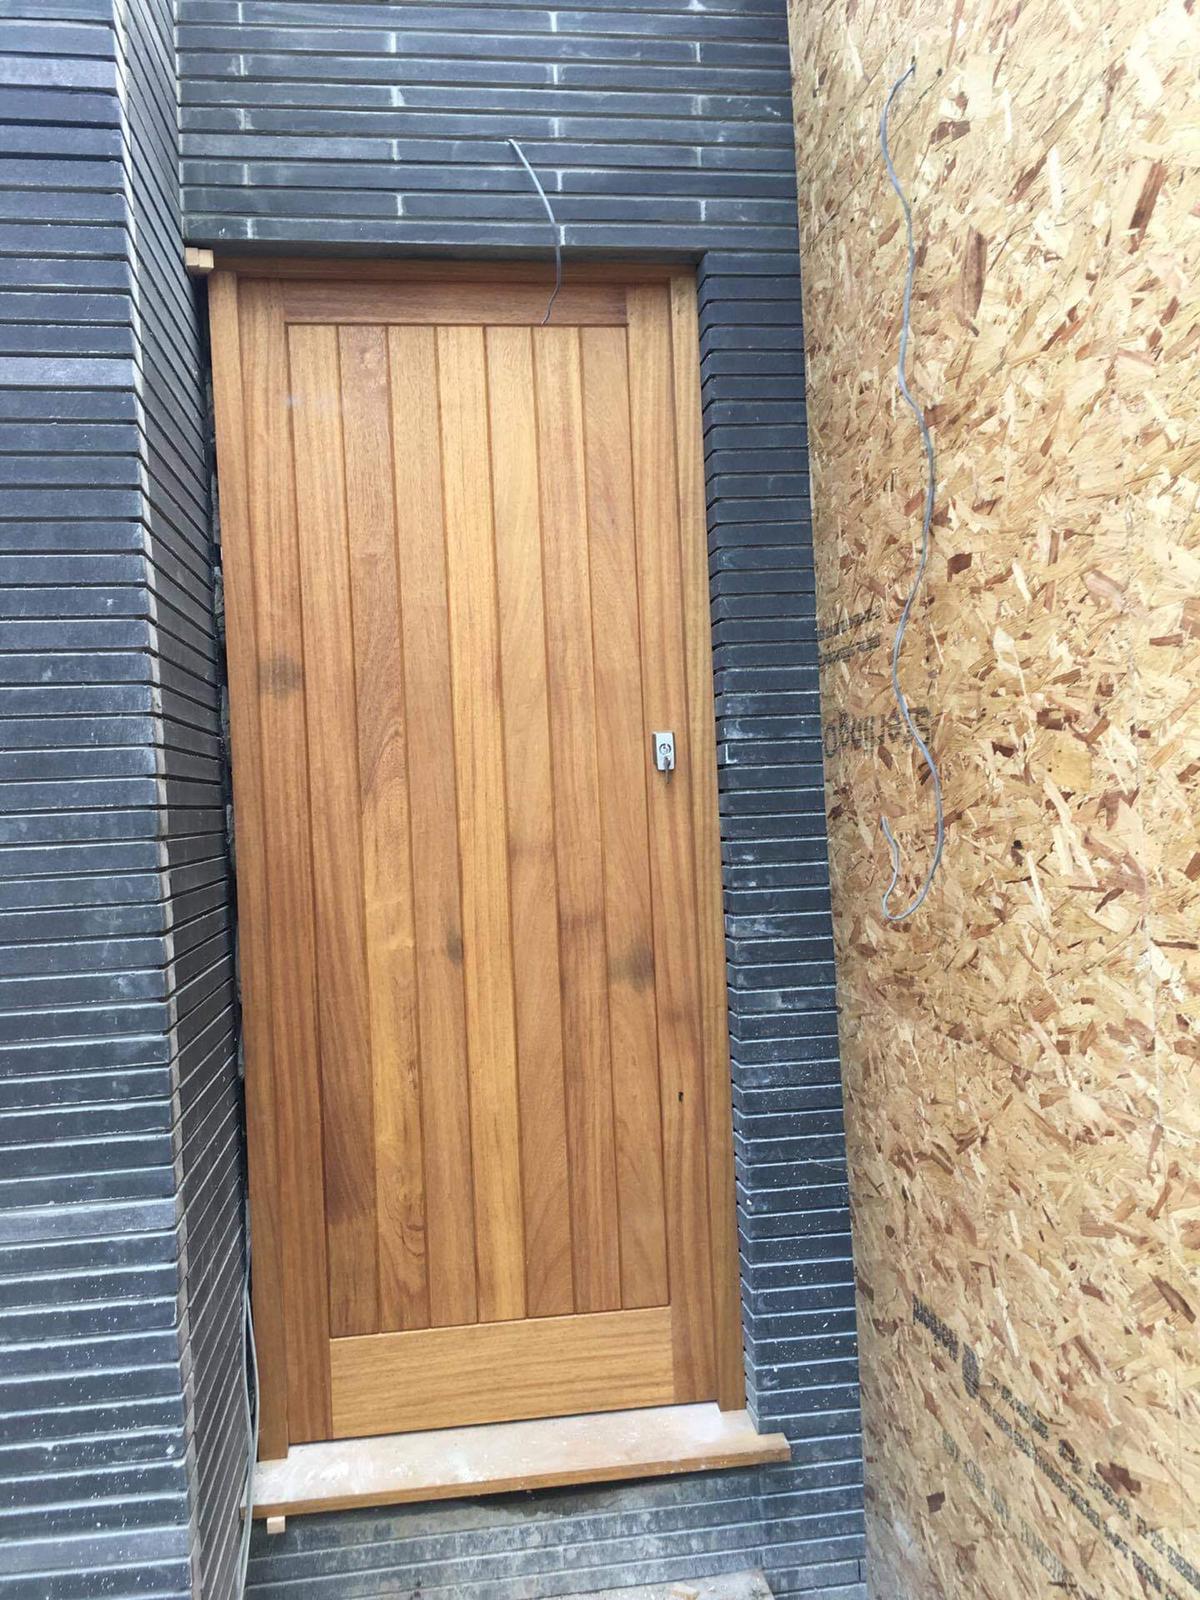 bespoke wooden doors at work